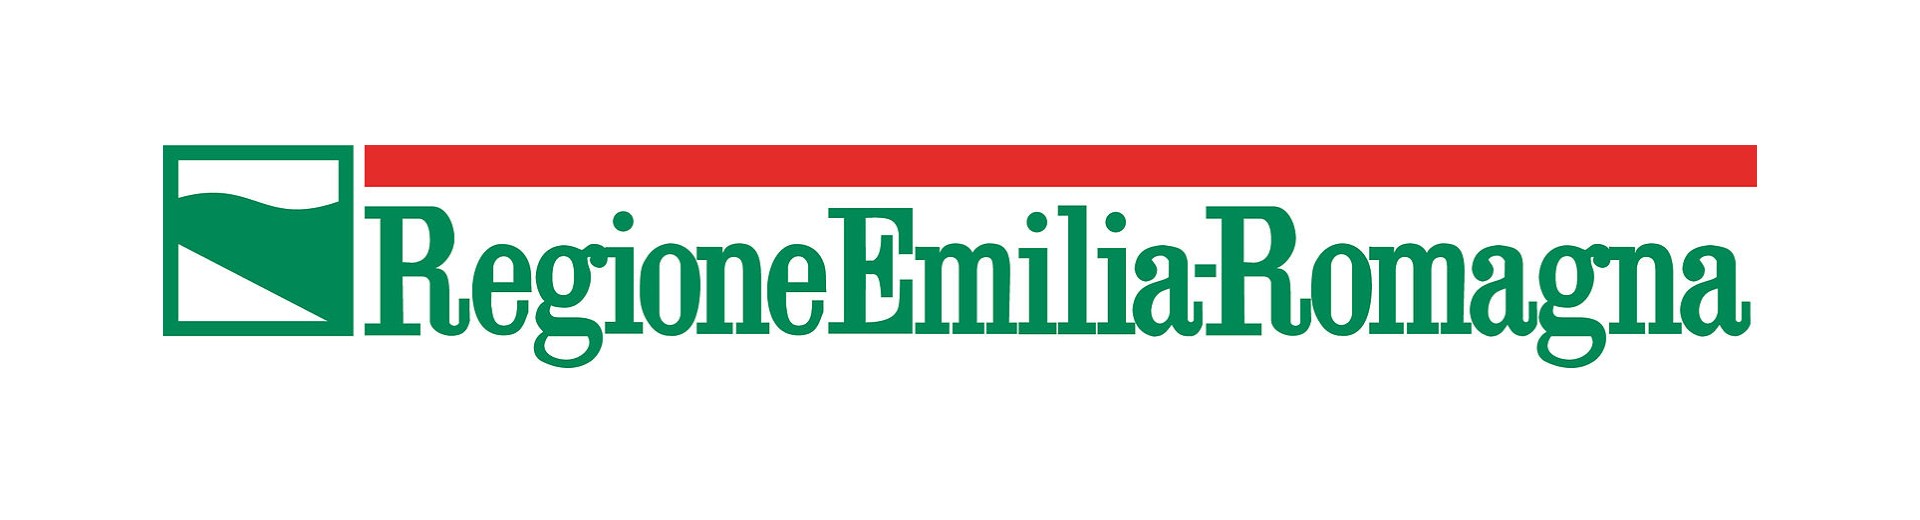 Logo Emilia Romagna